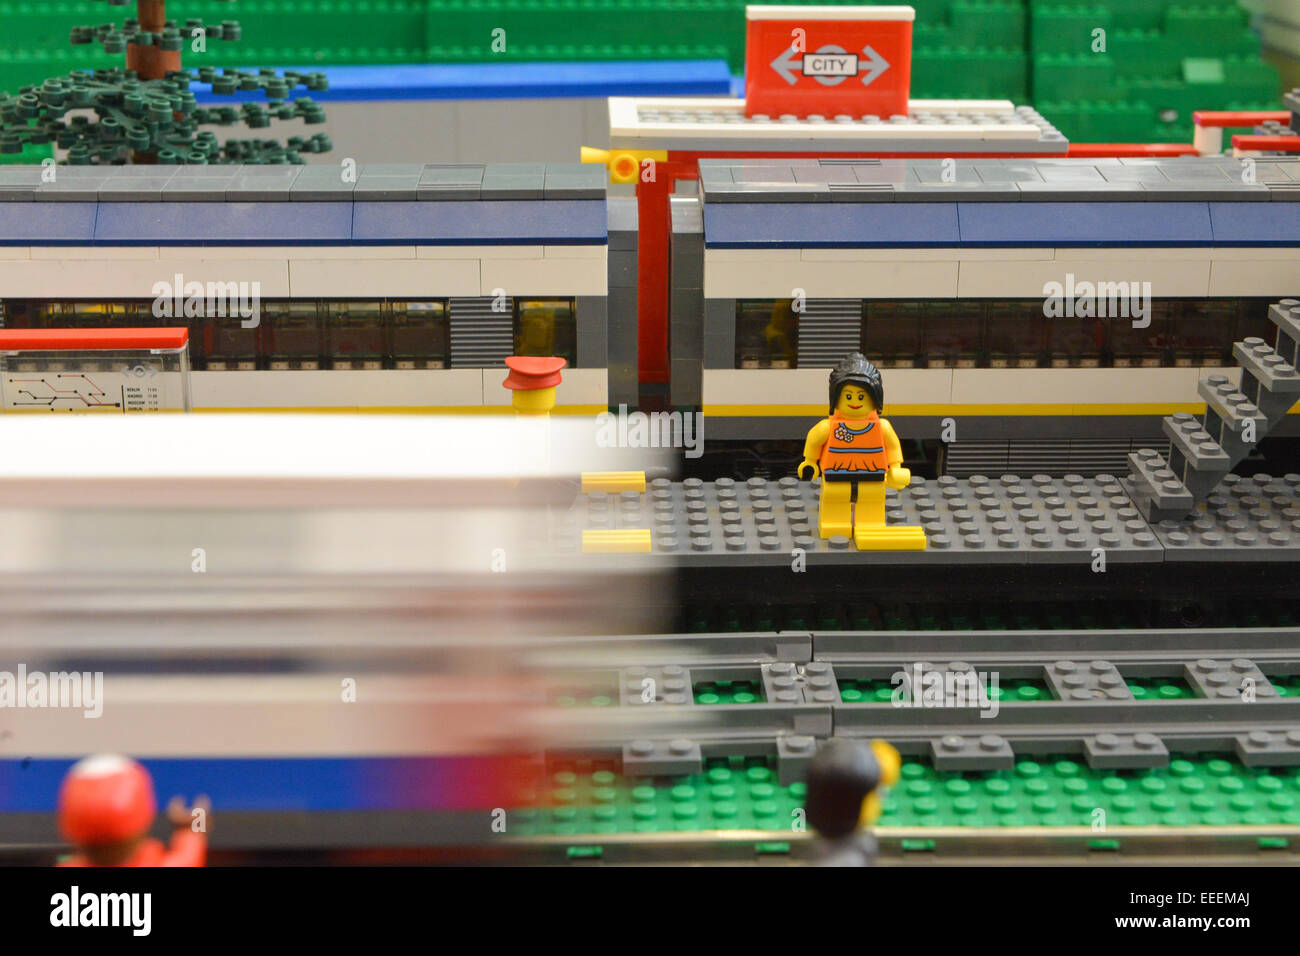 LEGO CITY Le Train de Voyageurs sous le Sapin de Noel Eurostar Review 60197  Speed Build 